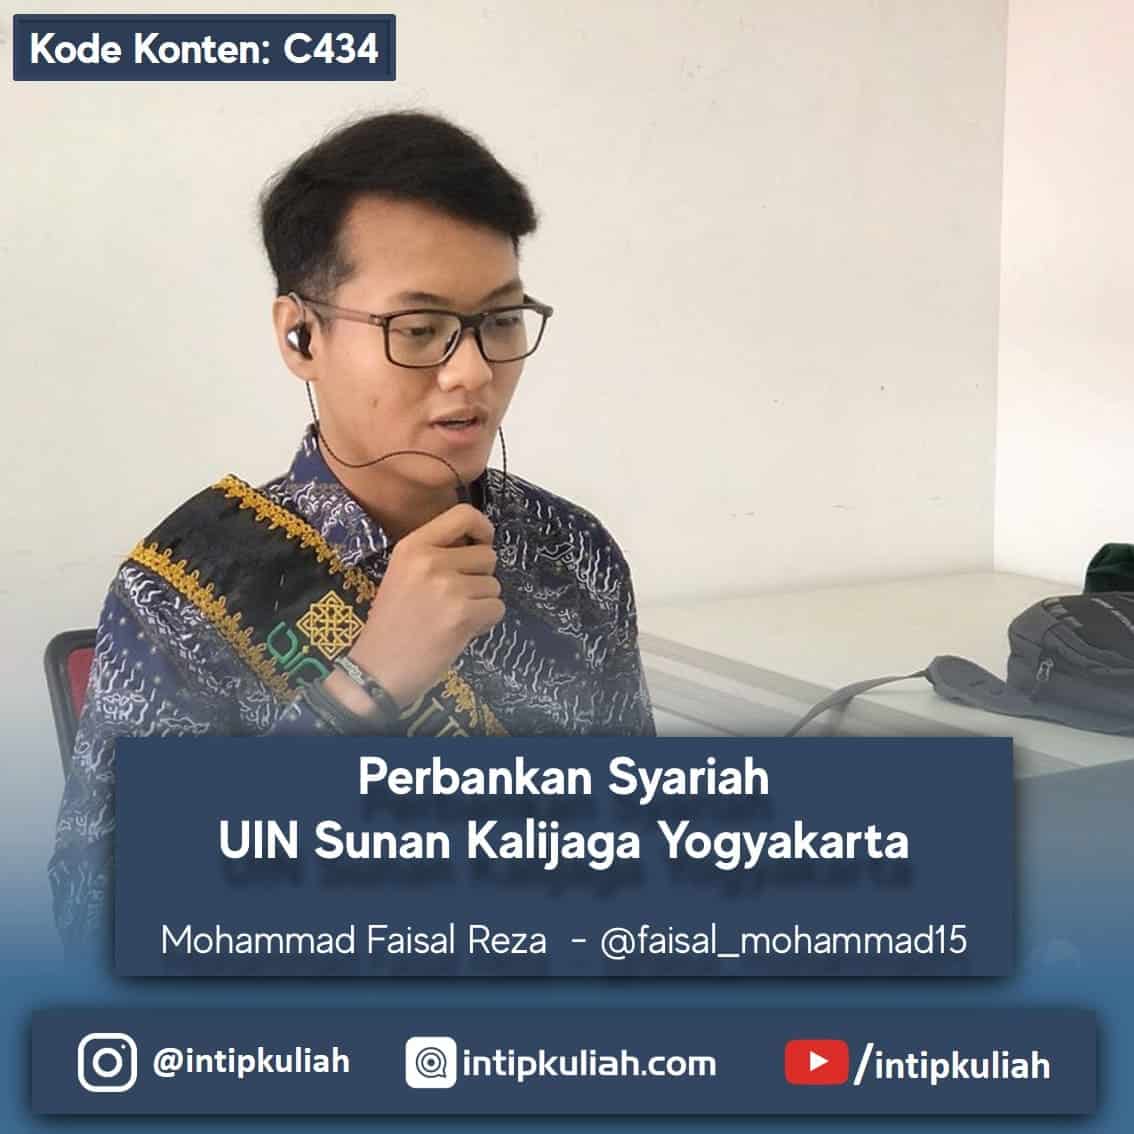 Perbankan Syariah UIN Sunan Kalijaga Yogyakarta (Faizal)